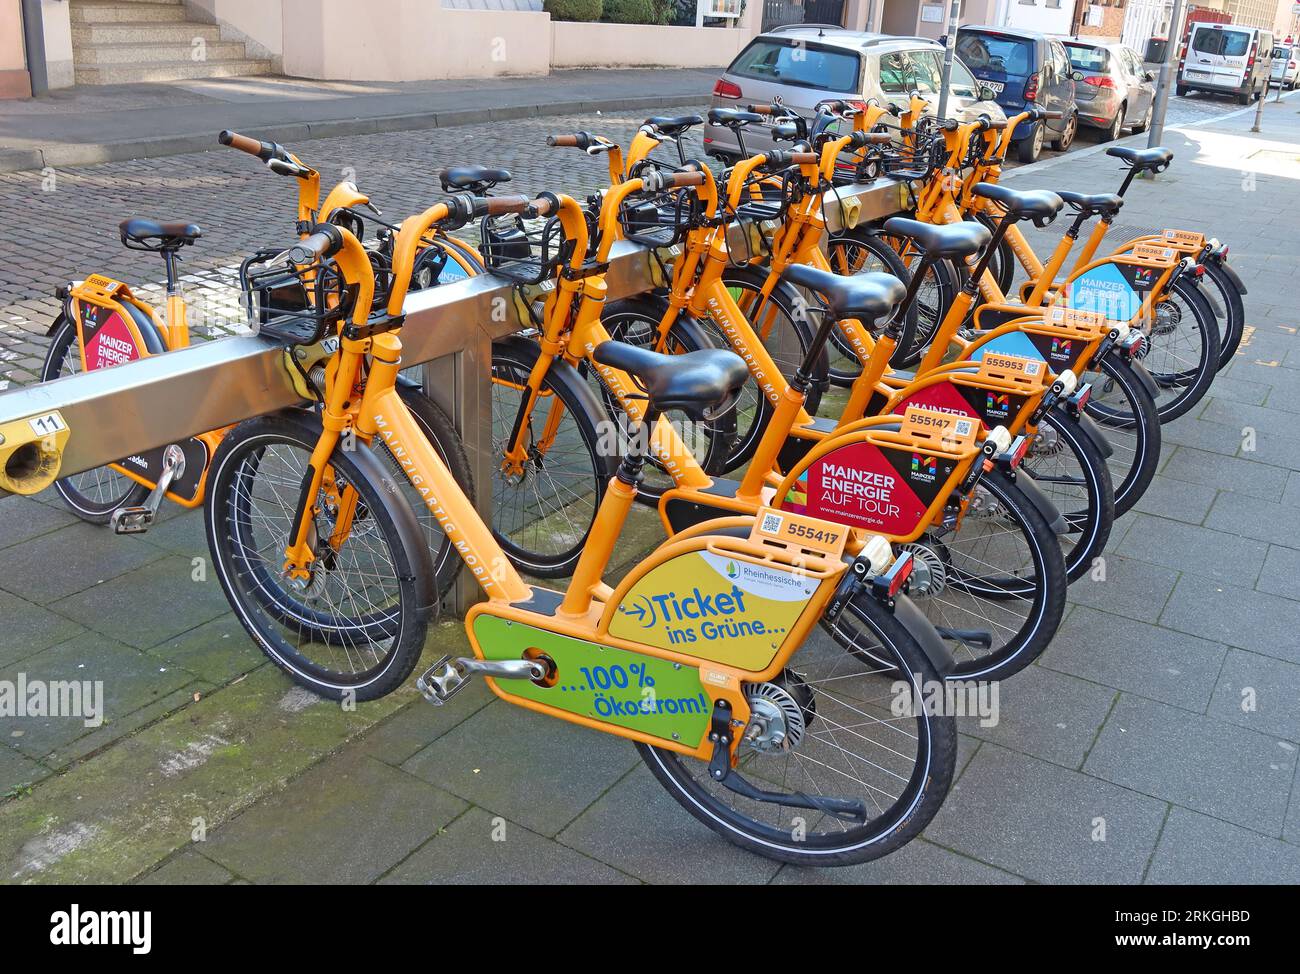 Mainzigartig Mobil - Rheinhessische Orange noleggio pubblico di biciclette elettriche a pedalata, stazione di noleggio, centro città di Magonza, Renania-Palatinato, Germania Foto Stock